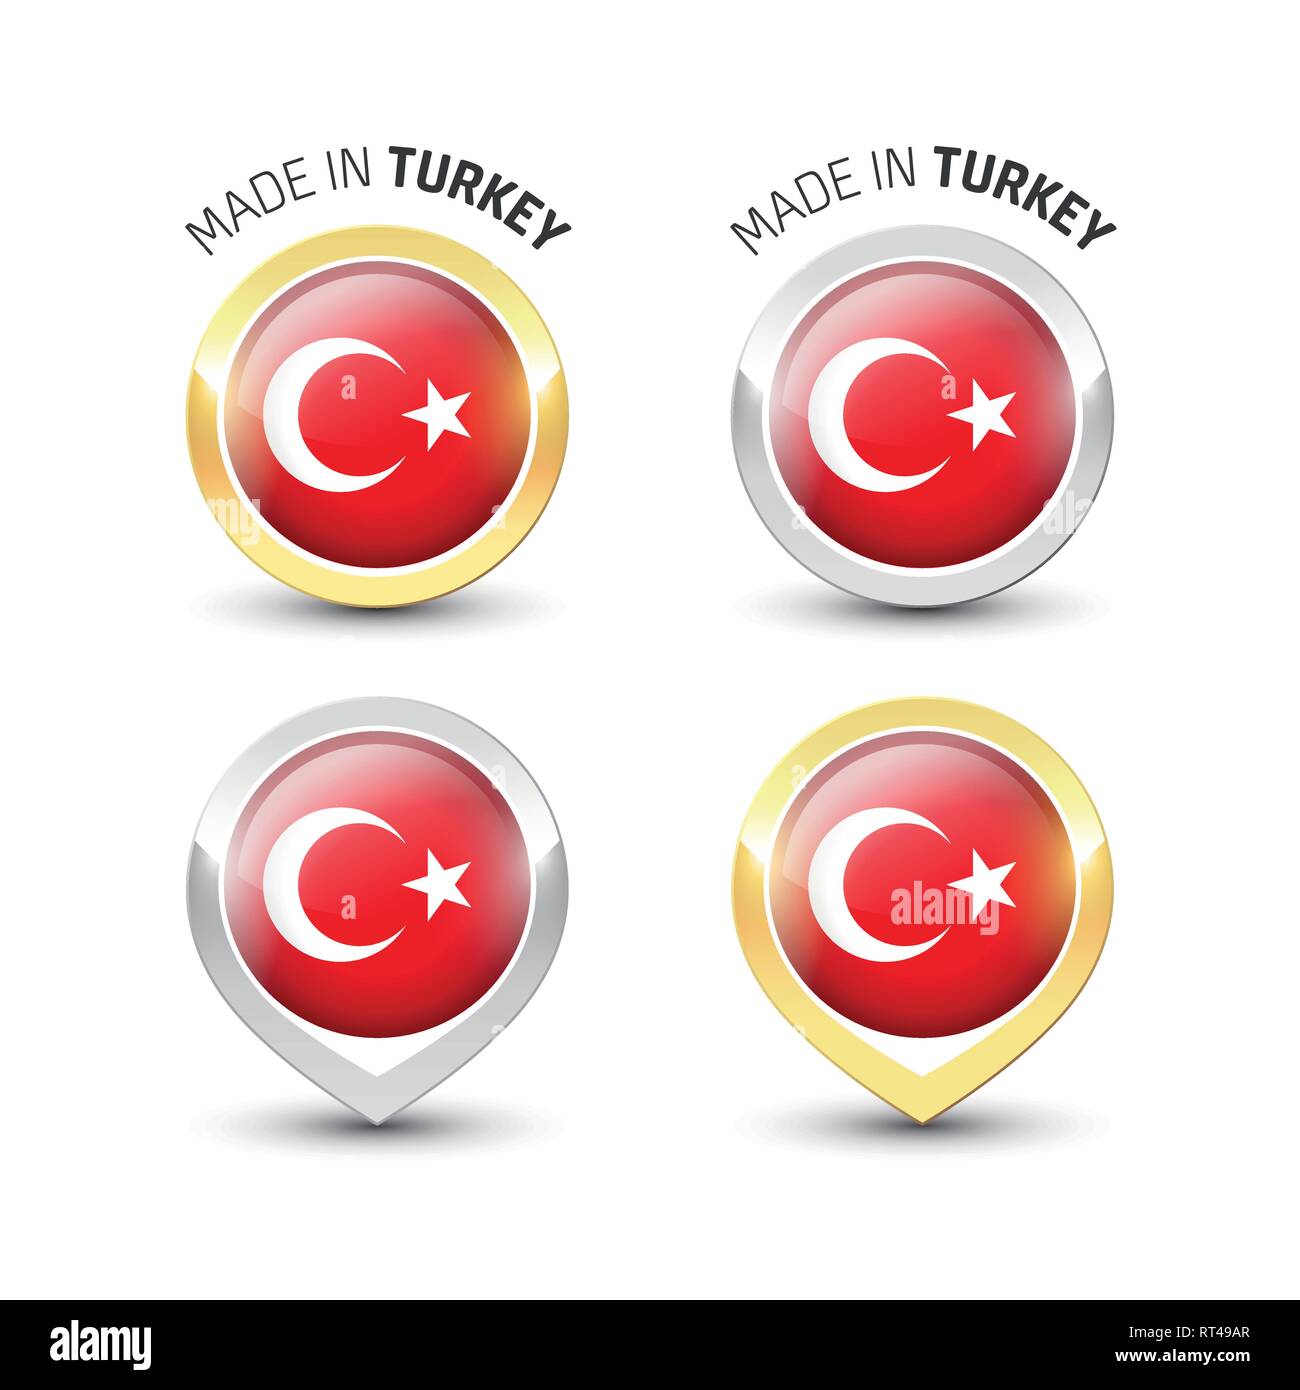 In der Türkei-Garantie Label mit der türkischen Flagge runde Gold und Silber Symbole gemacht. Stock Vektor